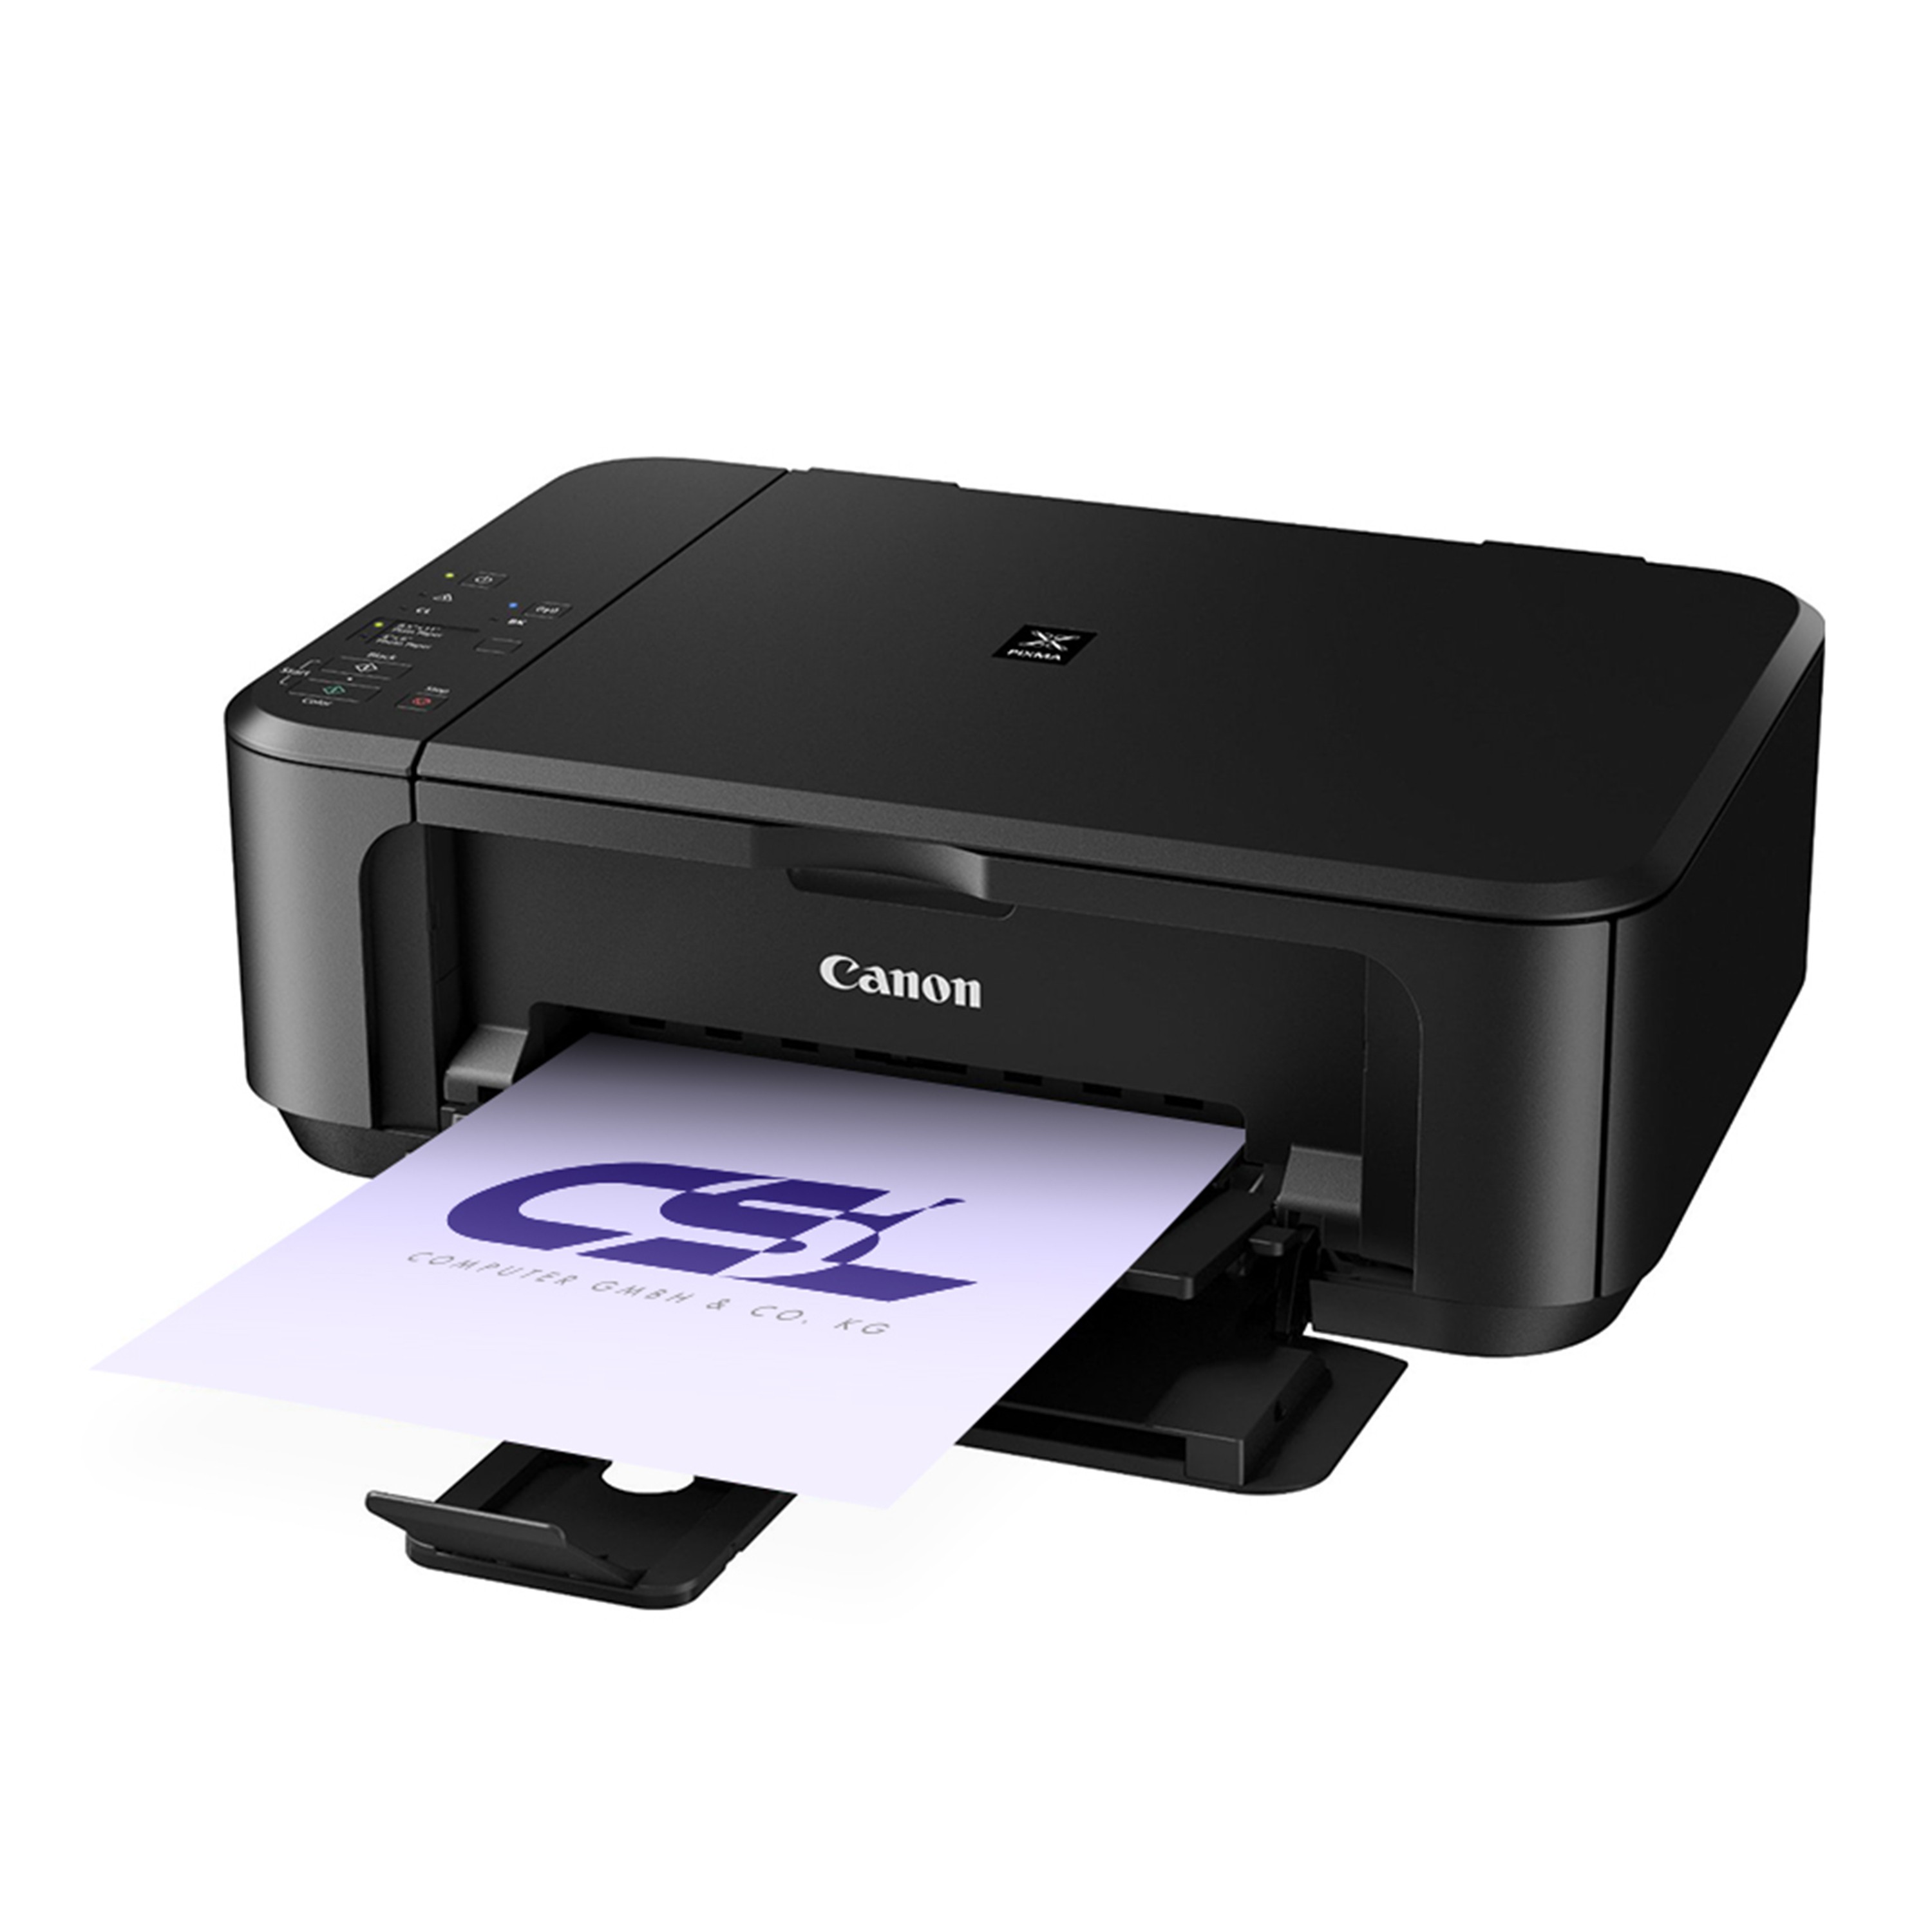 Canon pixma как сканировать. Canon mg3650. PIXMA mg3650s. Принтер Canon PIXMA mg3650s. Принтер Canon s400.